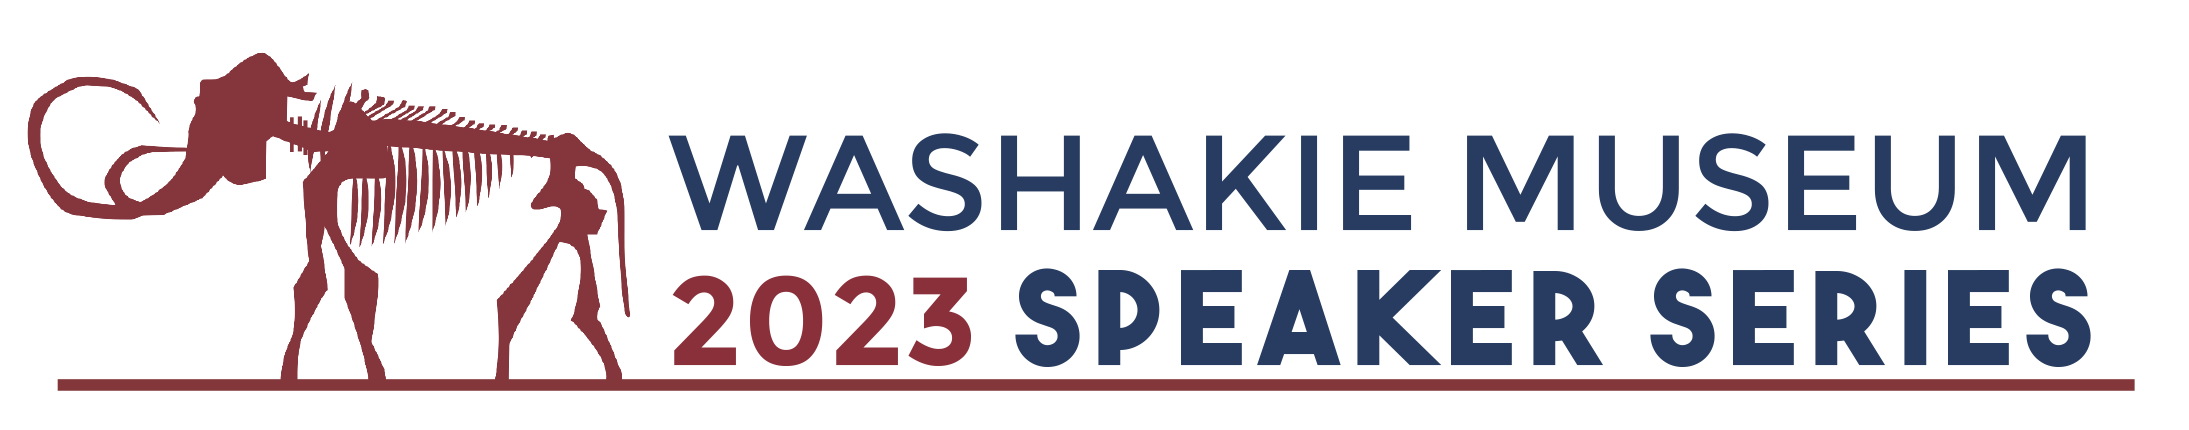 Washakie Museum Speaker Series